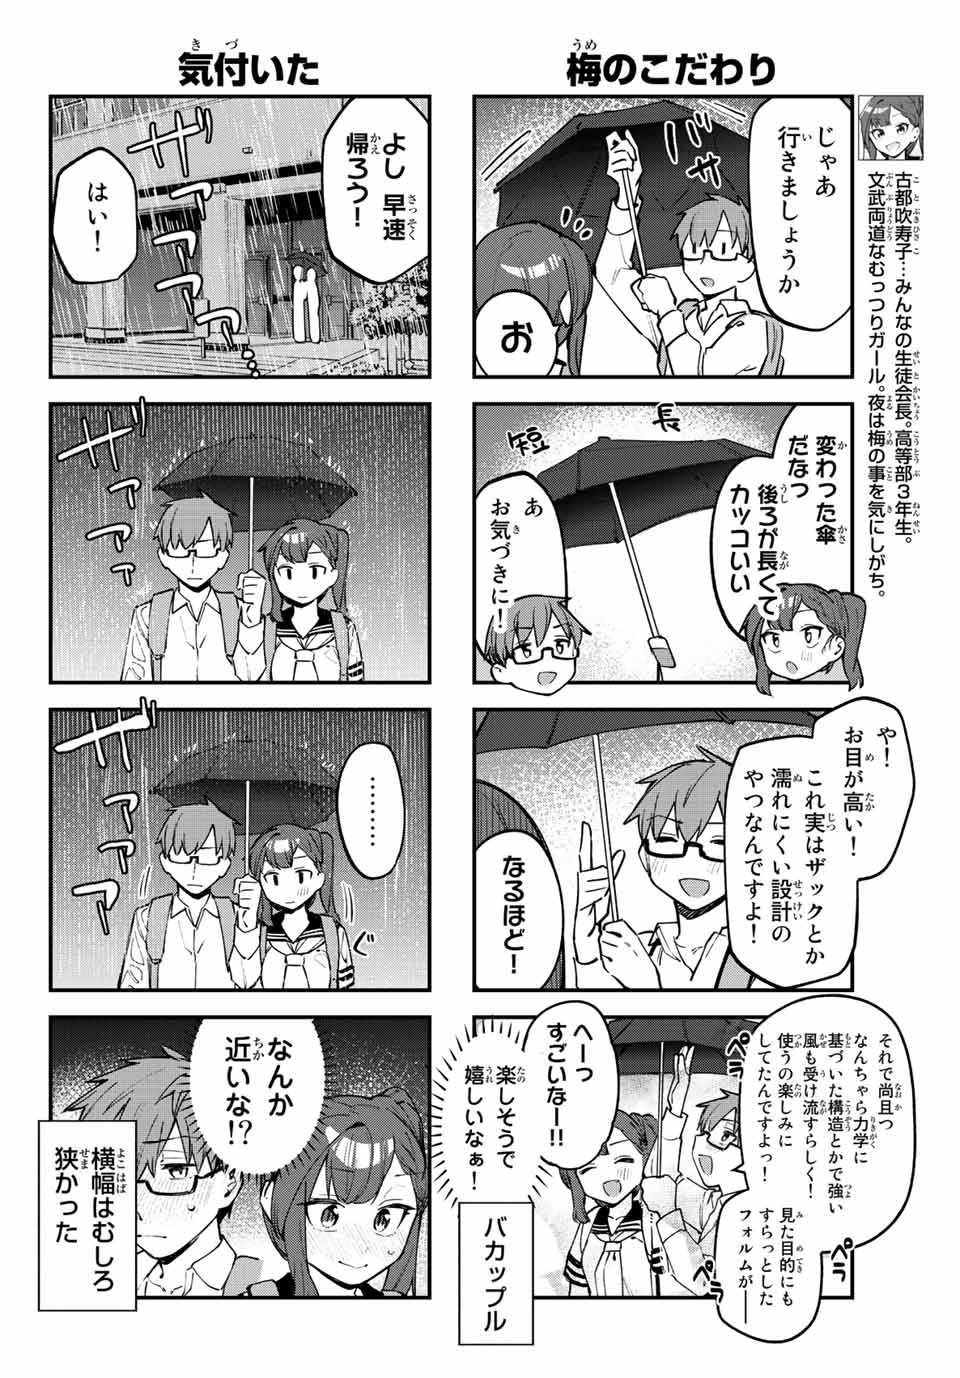 Seitokai mi mo Ana wa Aru! - Chapter 22 - Page 4